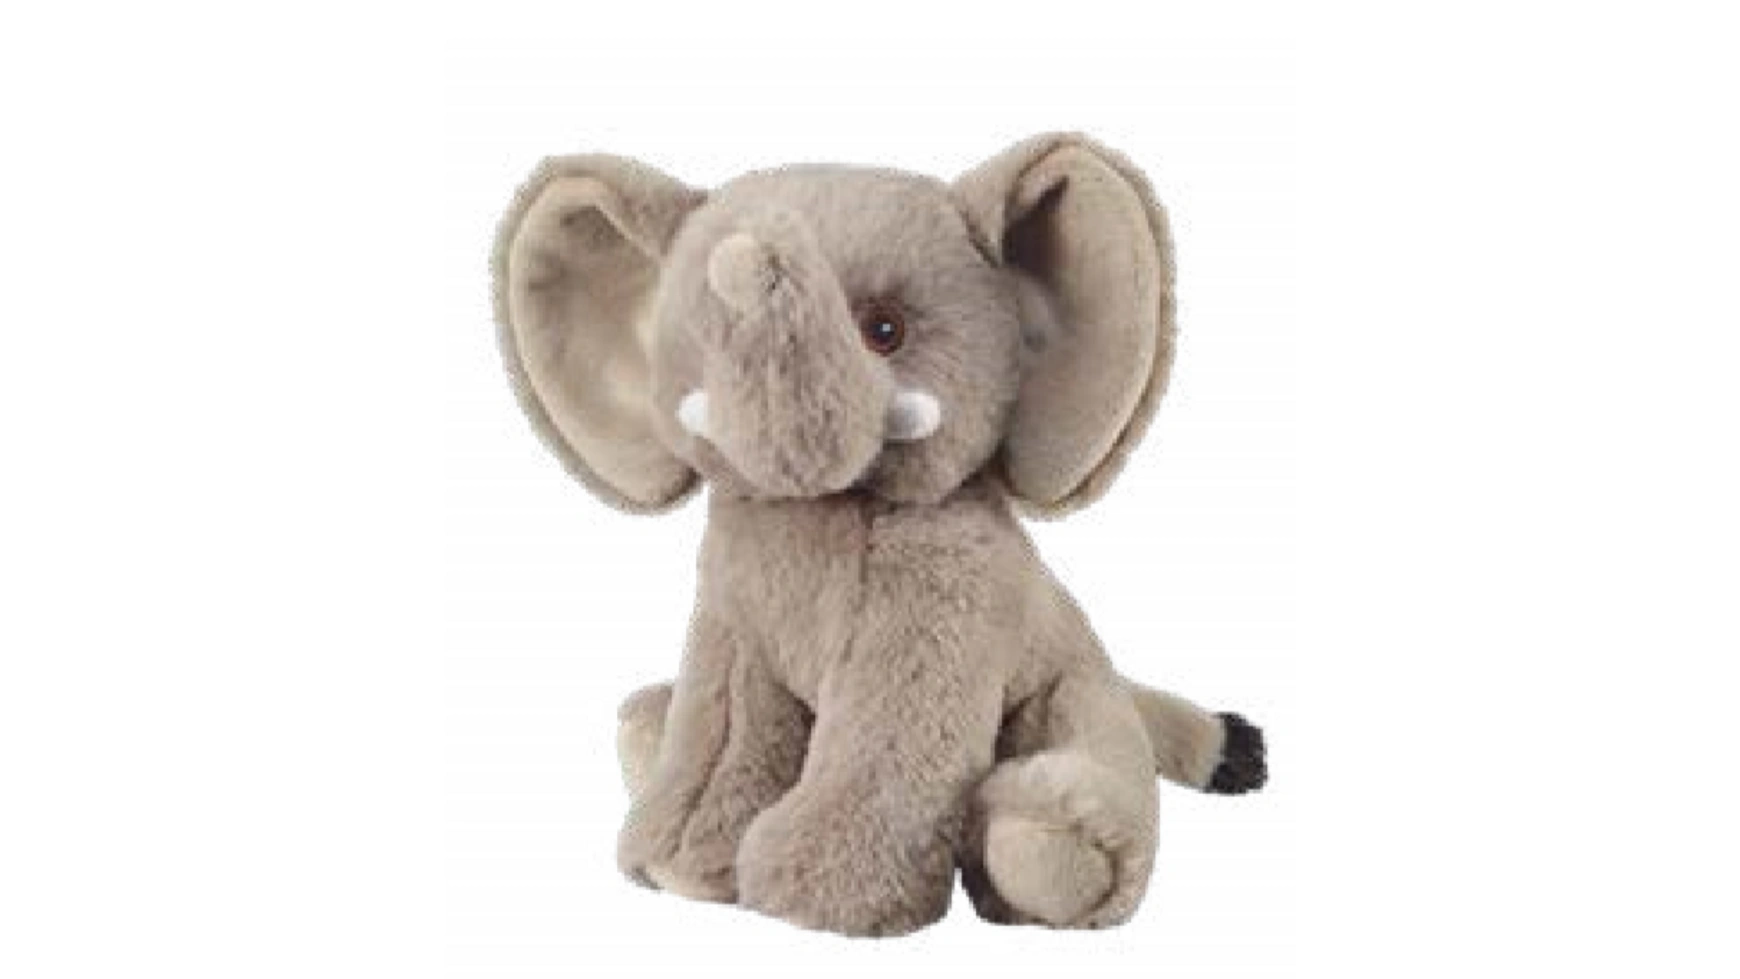 Bauer Eco-Line- I LIKE MY PLANET Плюшевый слон 20см мягкие плюшевые игрушки для детей зайчик для сна мягкие и плюшевые строительные игрушки для младенцев милый кролик 50 см кукла для младенц